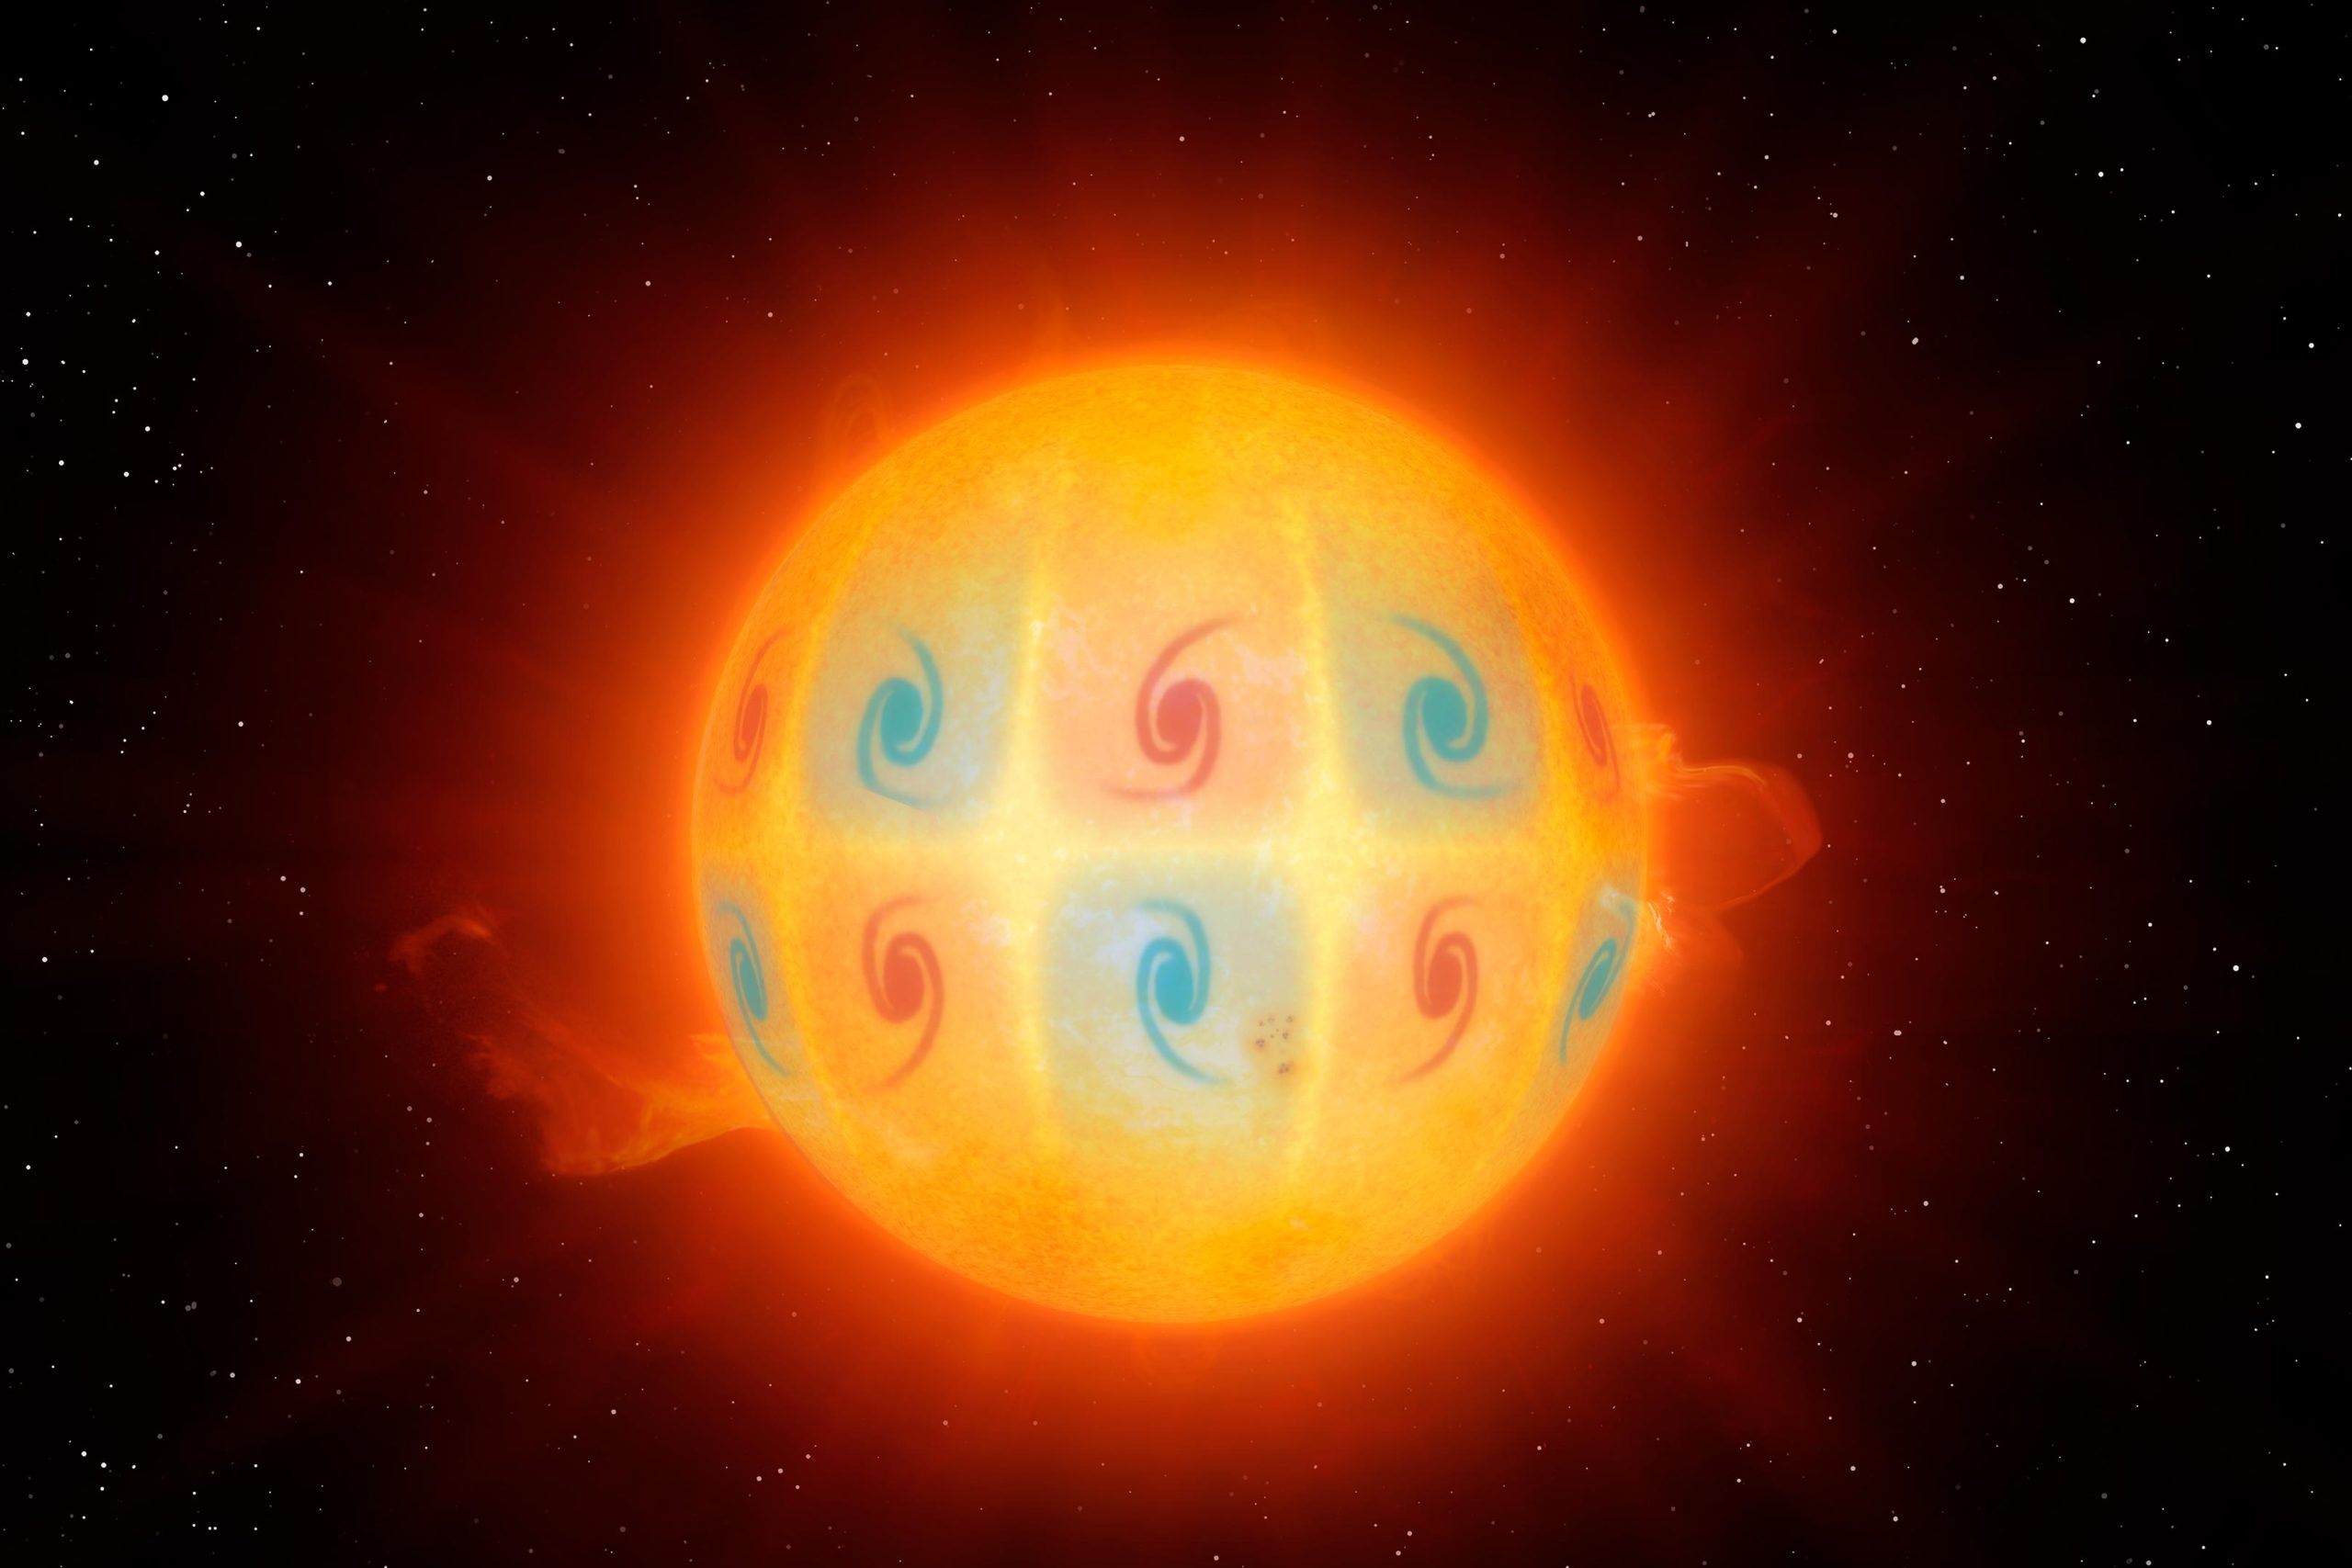 La découverte de mystérieuses ondes circulaires dans le soleil – une vitesse incroyable qui défie toute interprétation